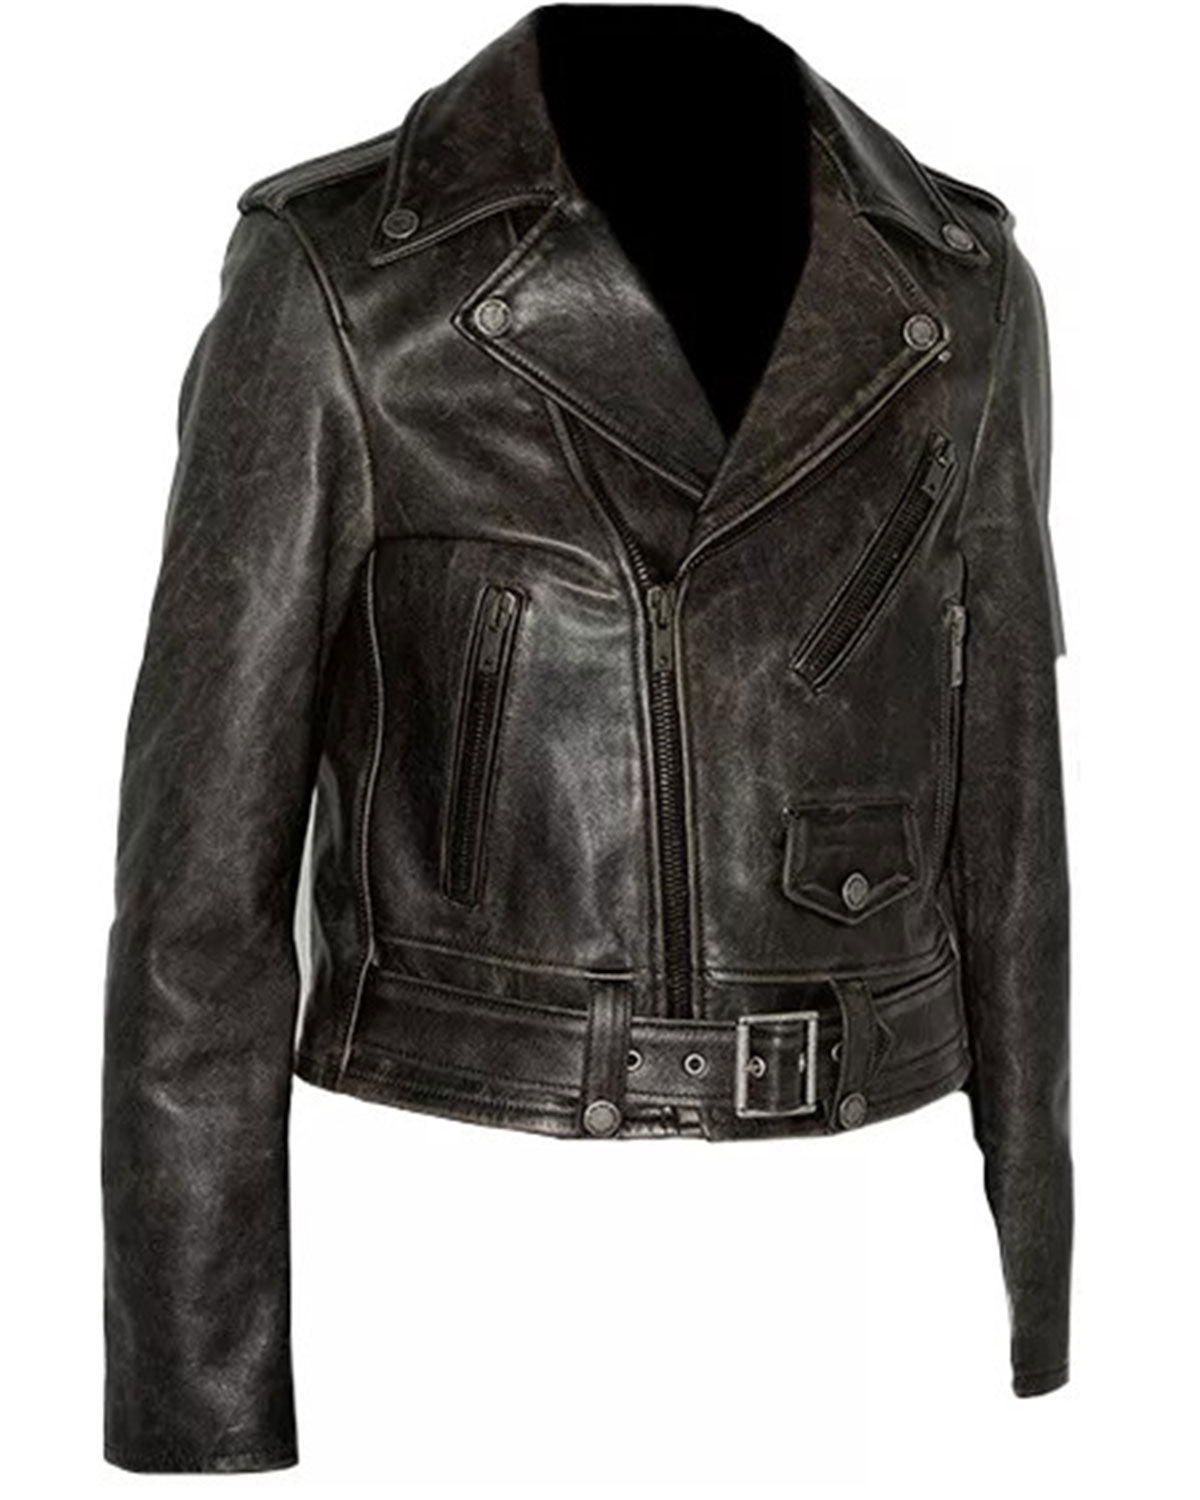 Womens Distressed Brown Leather Jacket | Elite Jacket